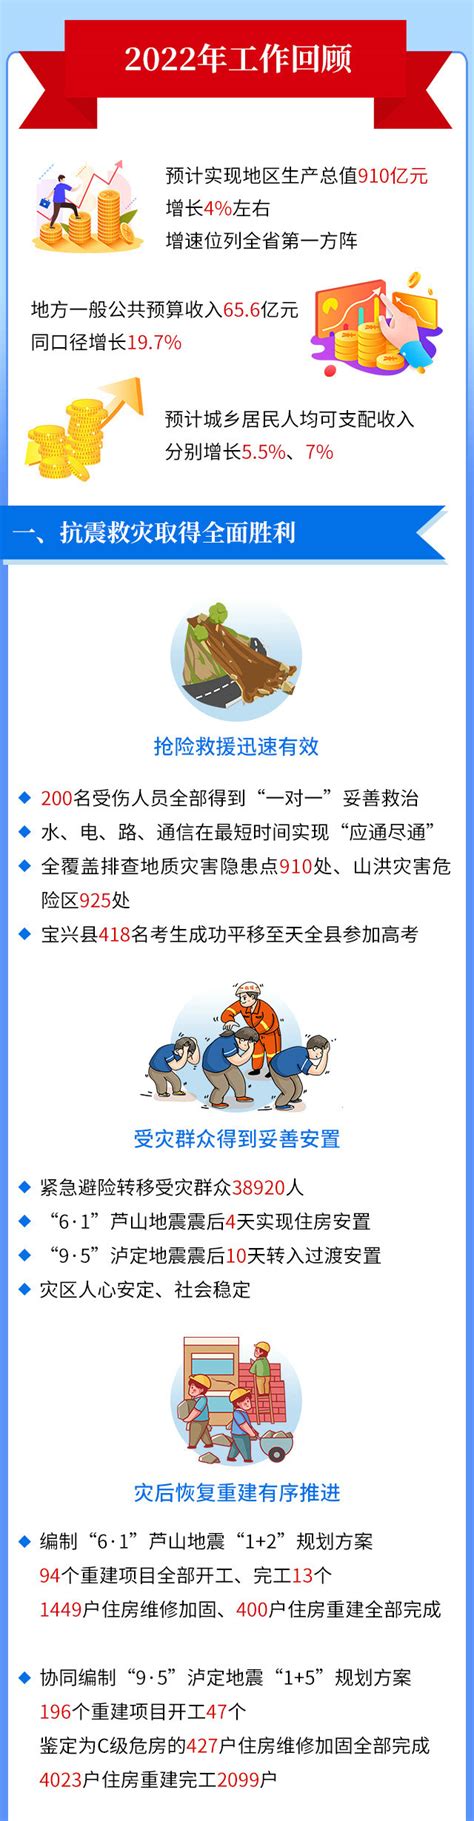 雅安发布2022年47件民生实事实施方案 涉教育、医疗等多领域凤凰网重庆_凤凰网